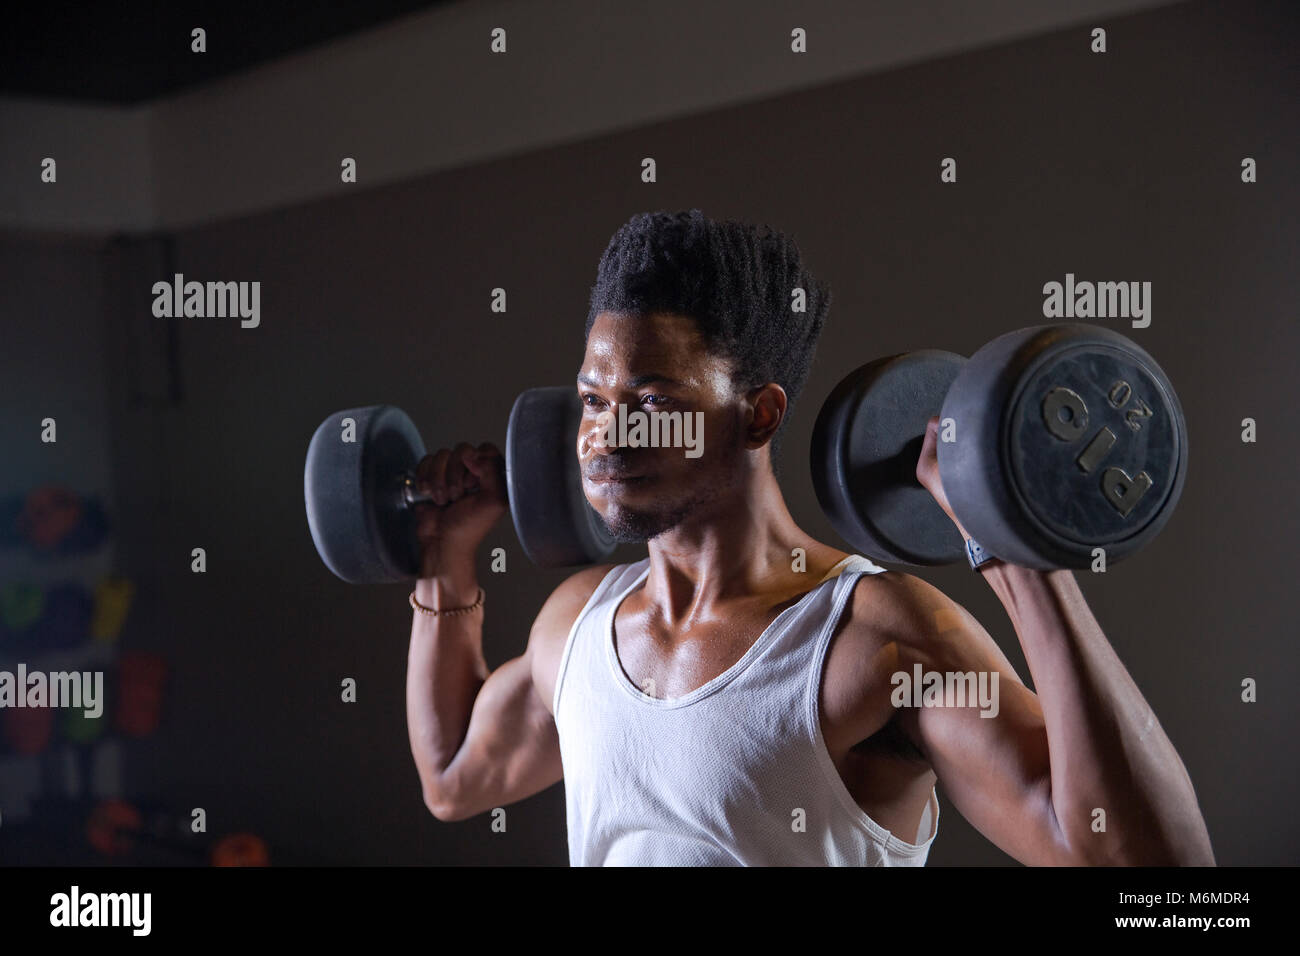 Athlète africain lever des poids dans une salle de sport Banque D'Images